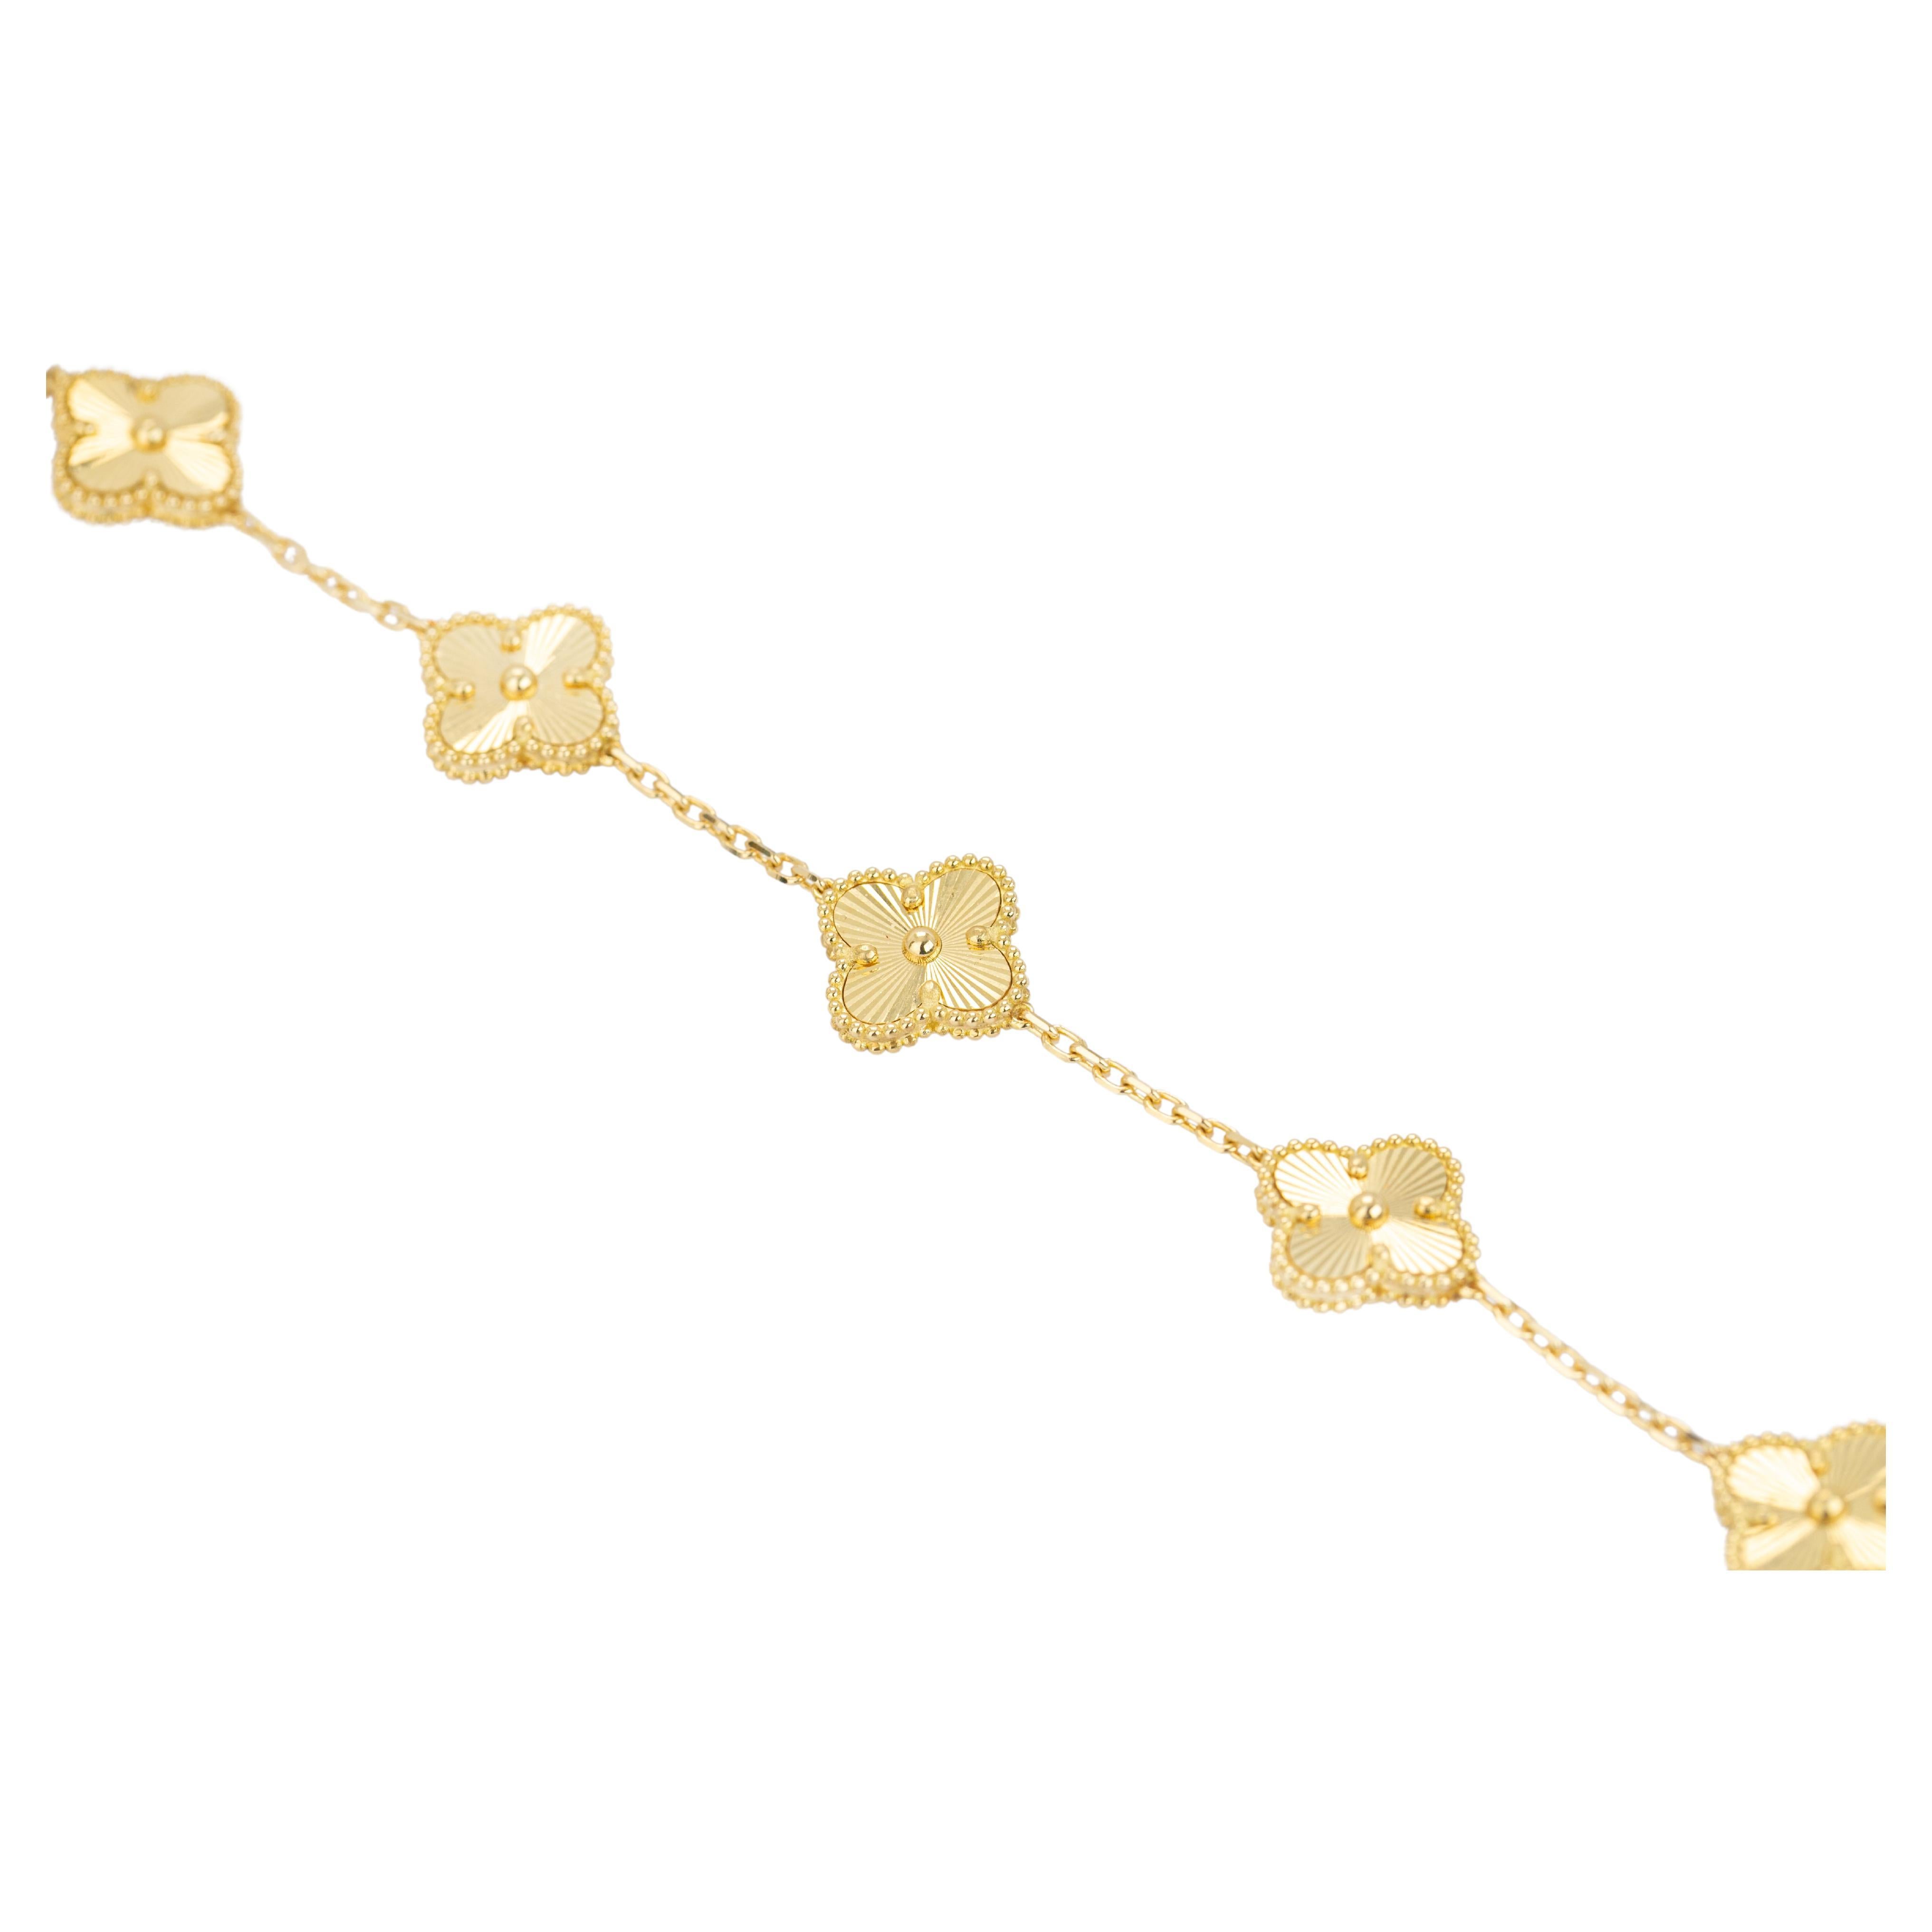 18k Gold Bracelet with Bold Chain, 18k Gold Chain Bracelet, Rectangle Bracelet